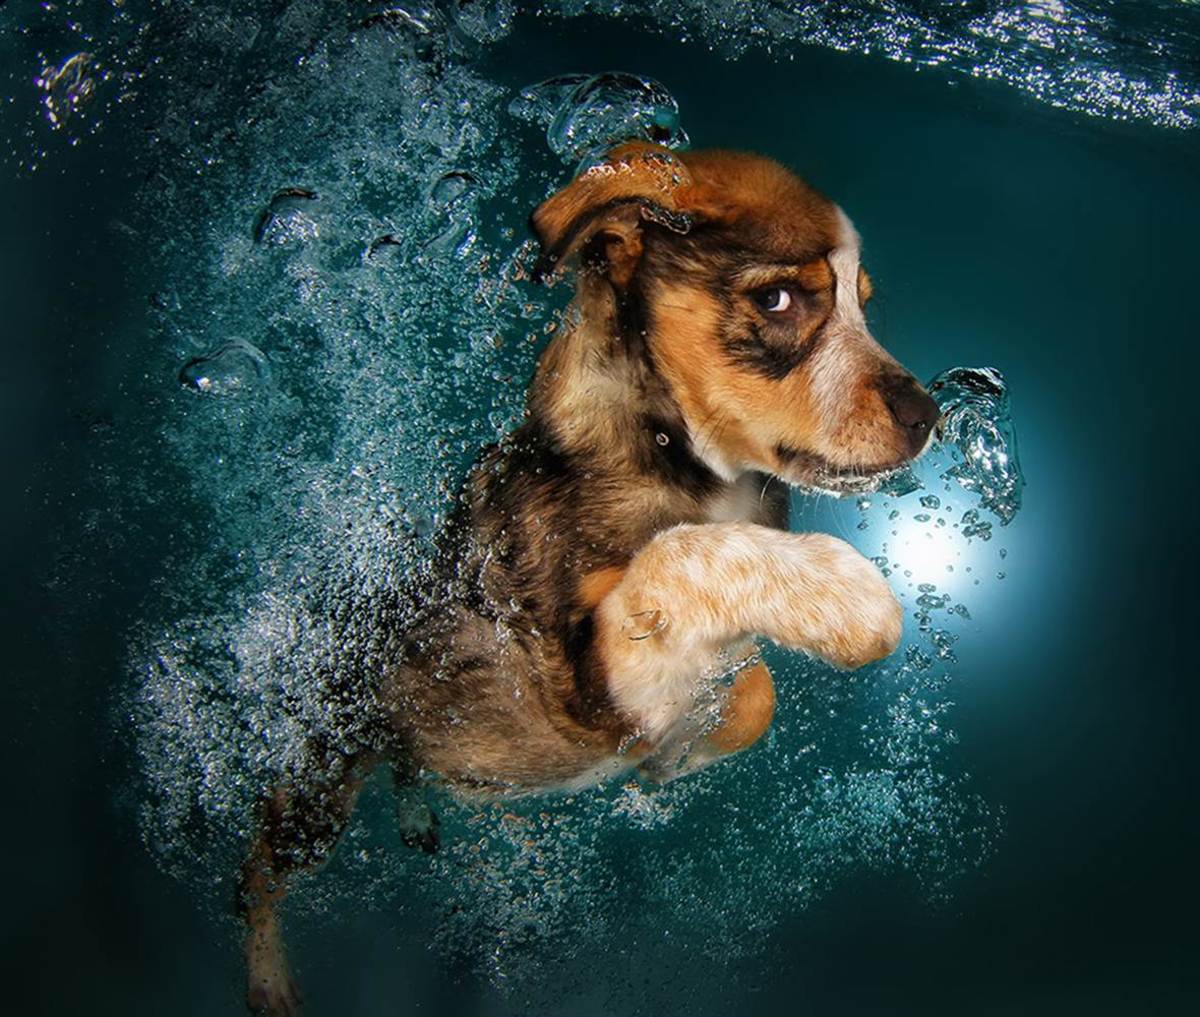 Underwater Puppies Ginger.jpg